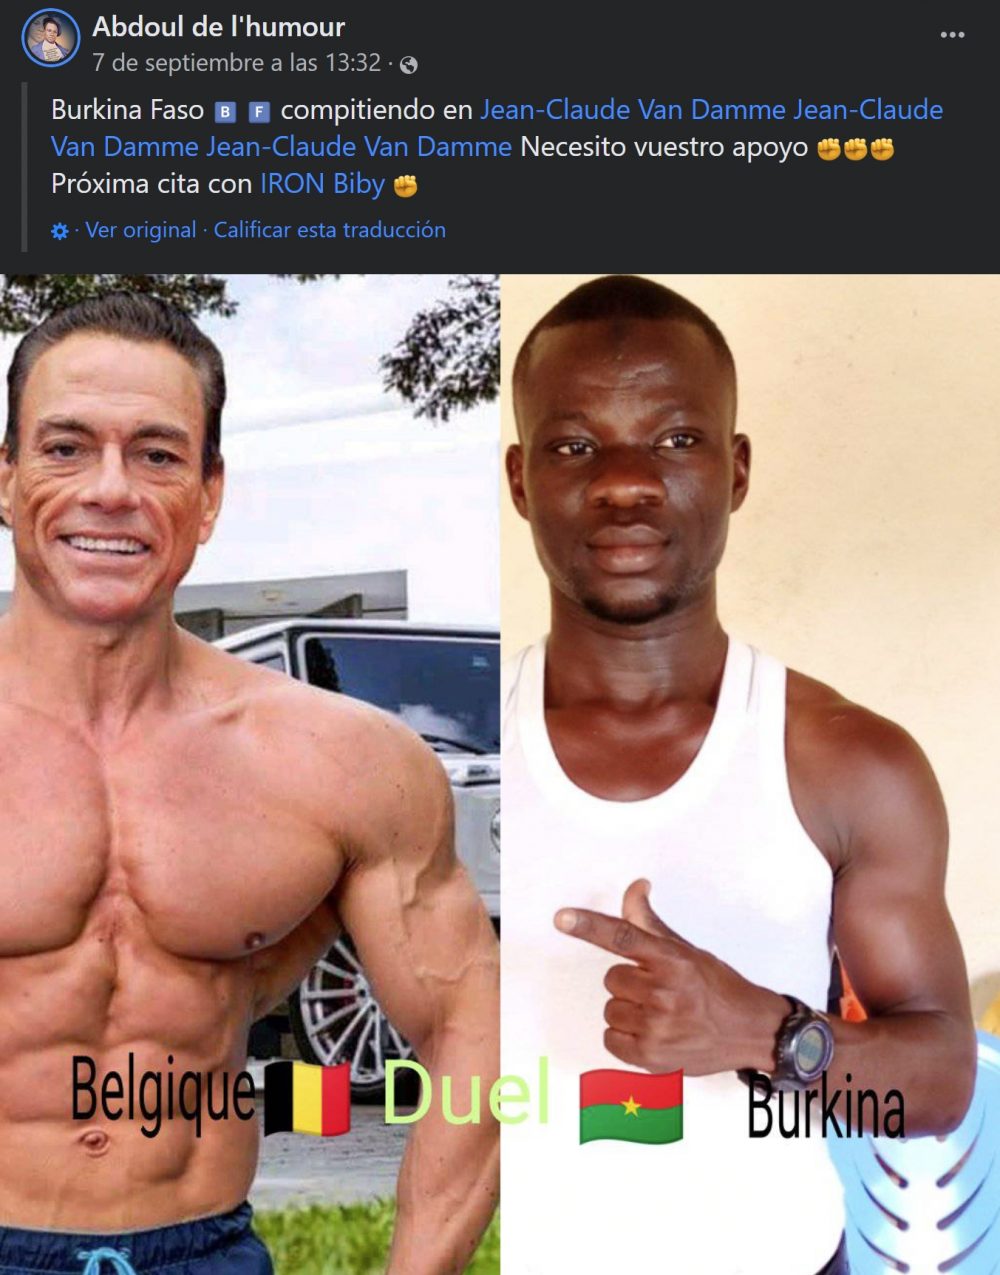 Aparición estelar de Jean-Claude Van Damme en un post sobre un combate fake de Burkina Faso